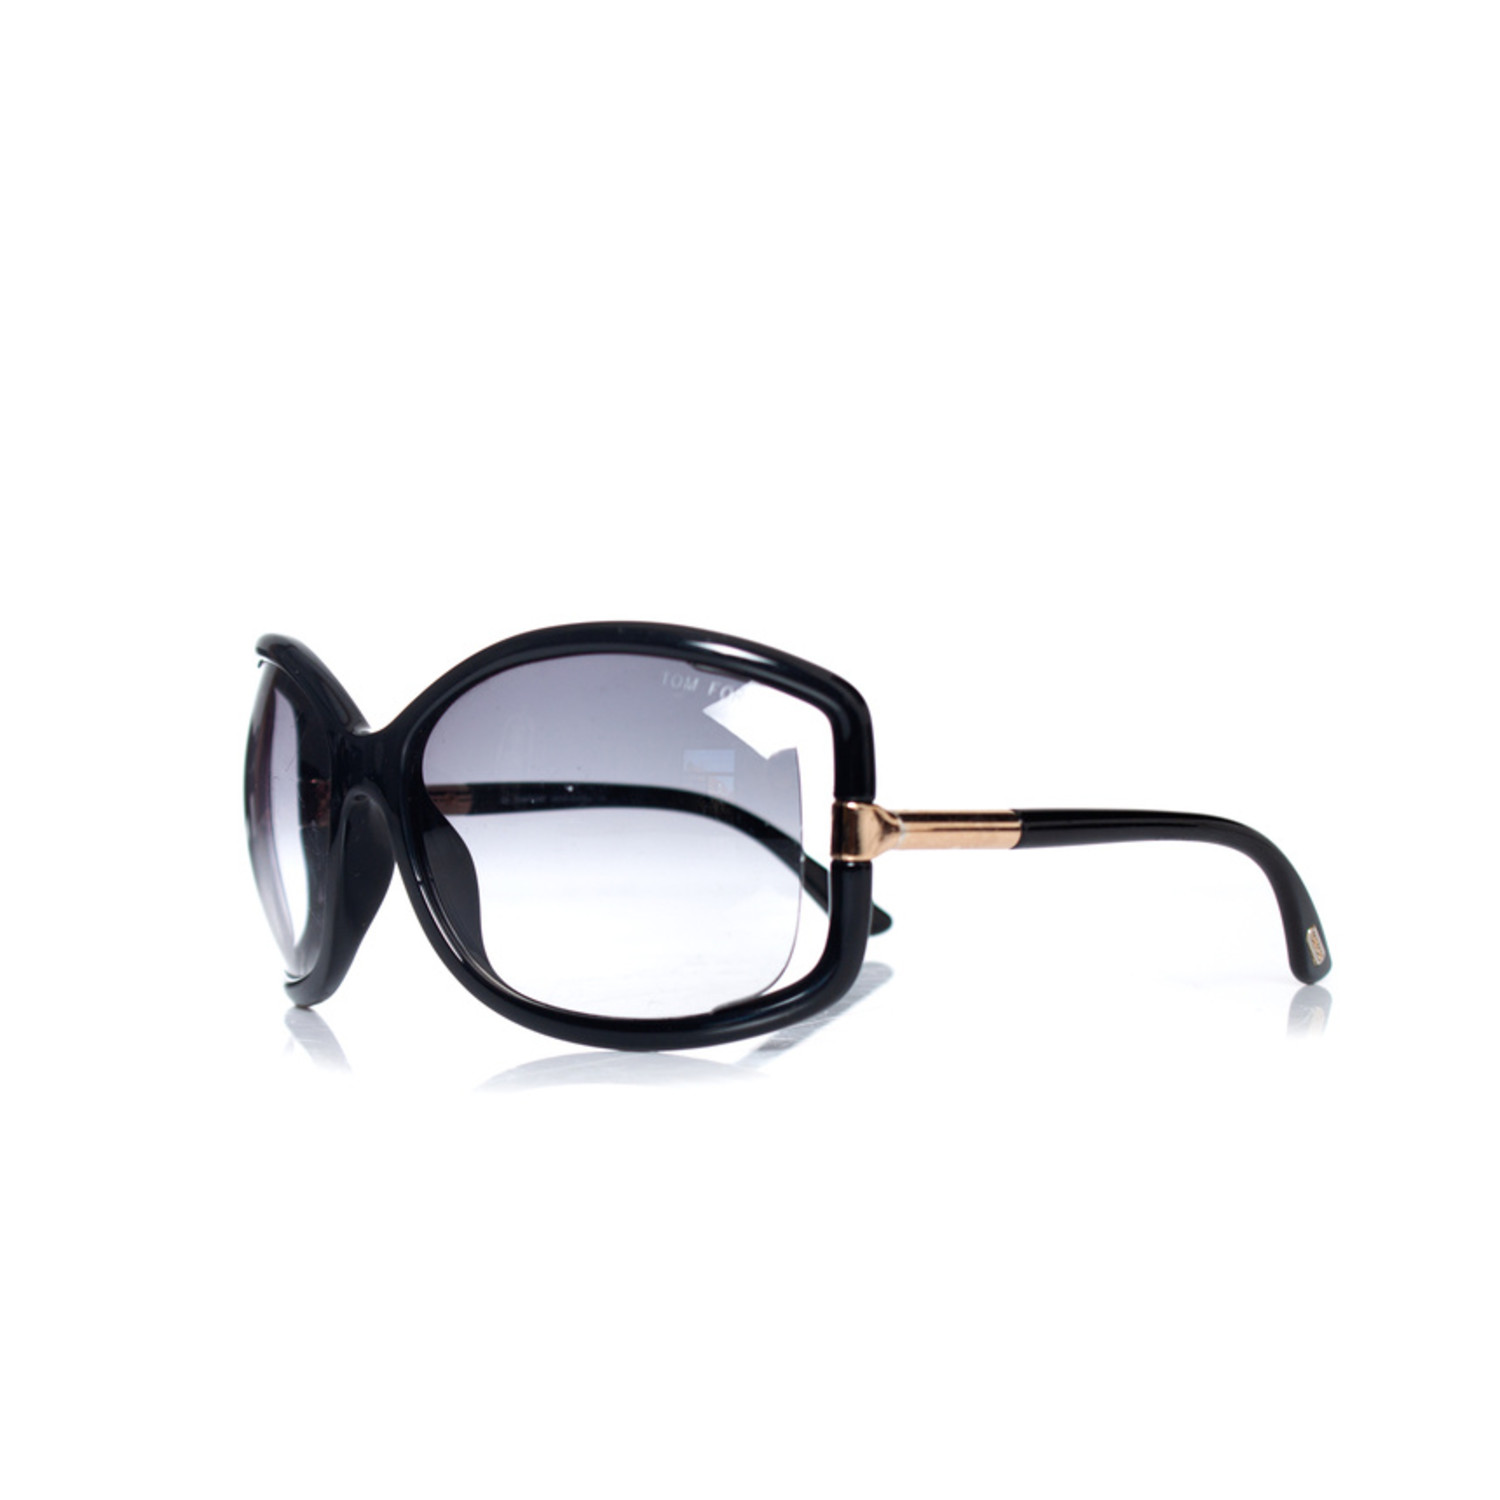 Tom Ford, Black Anais sunglasses - Unique Designer Pieces